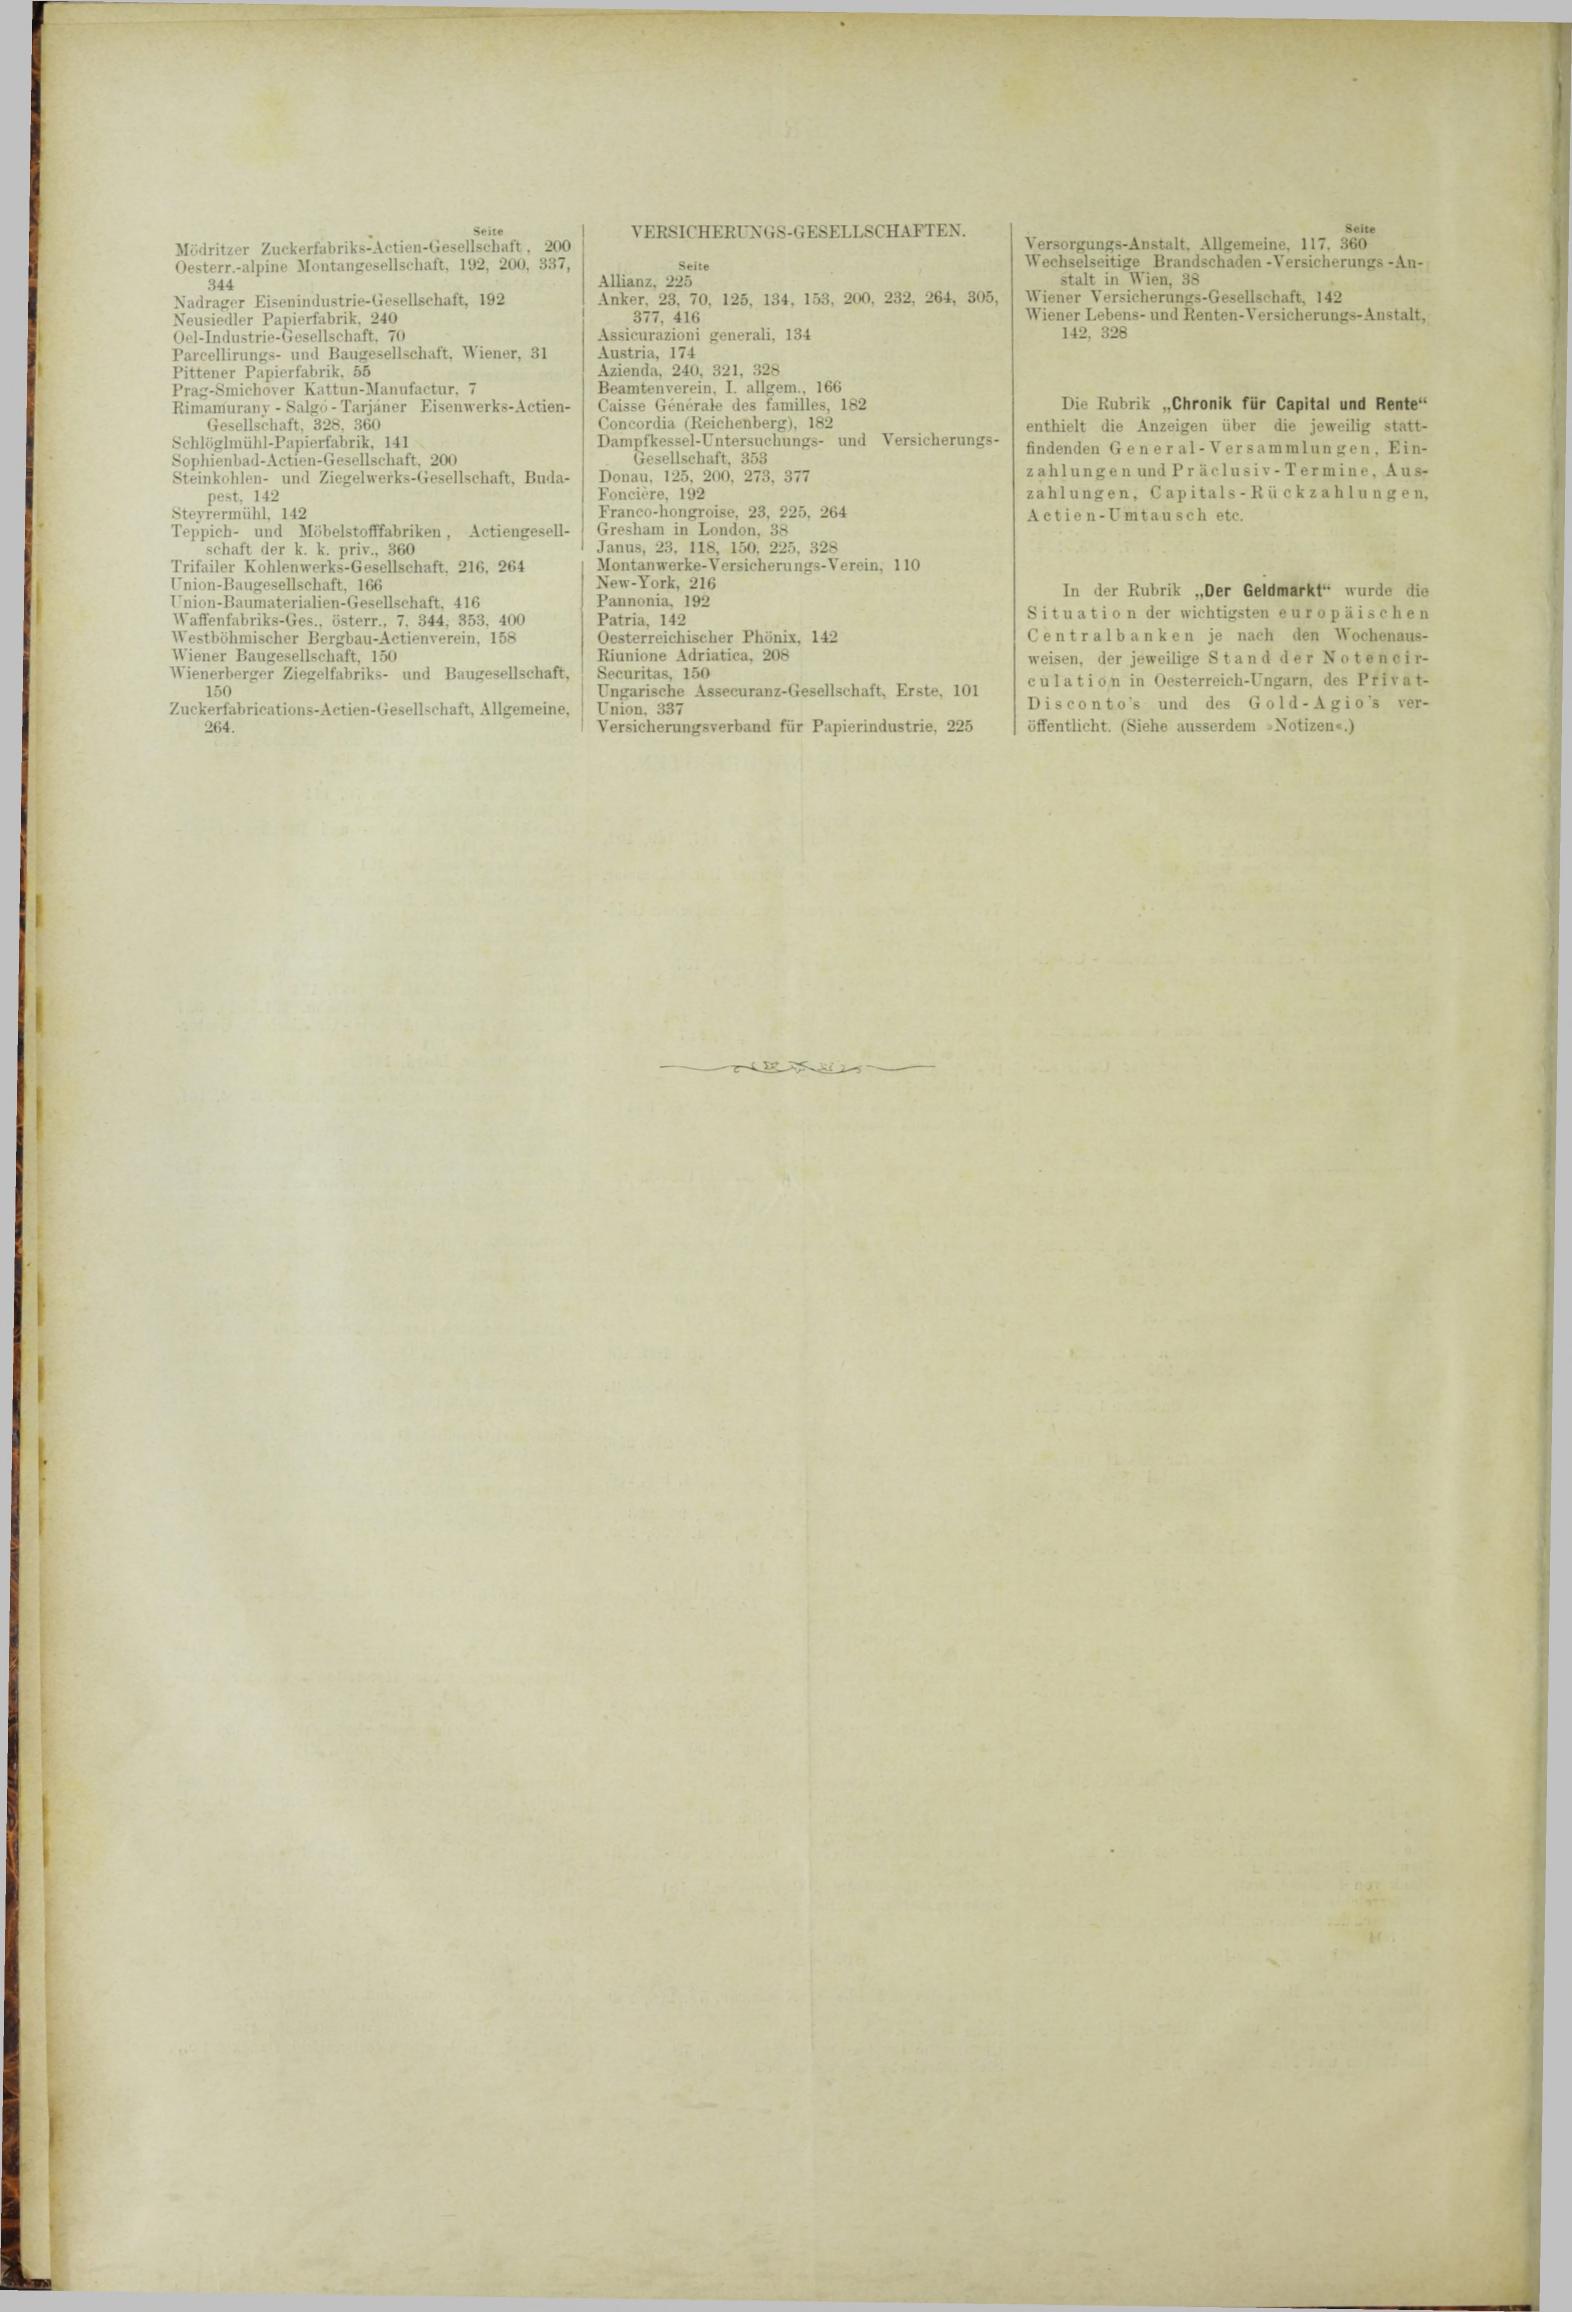 Der Tresor 26.07.1883 - Seite 12